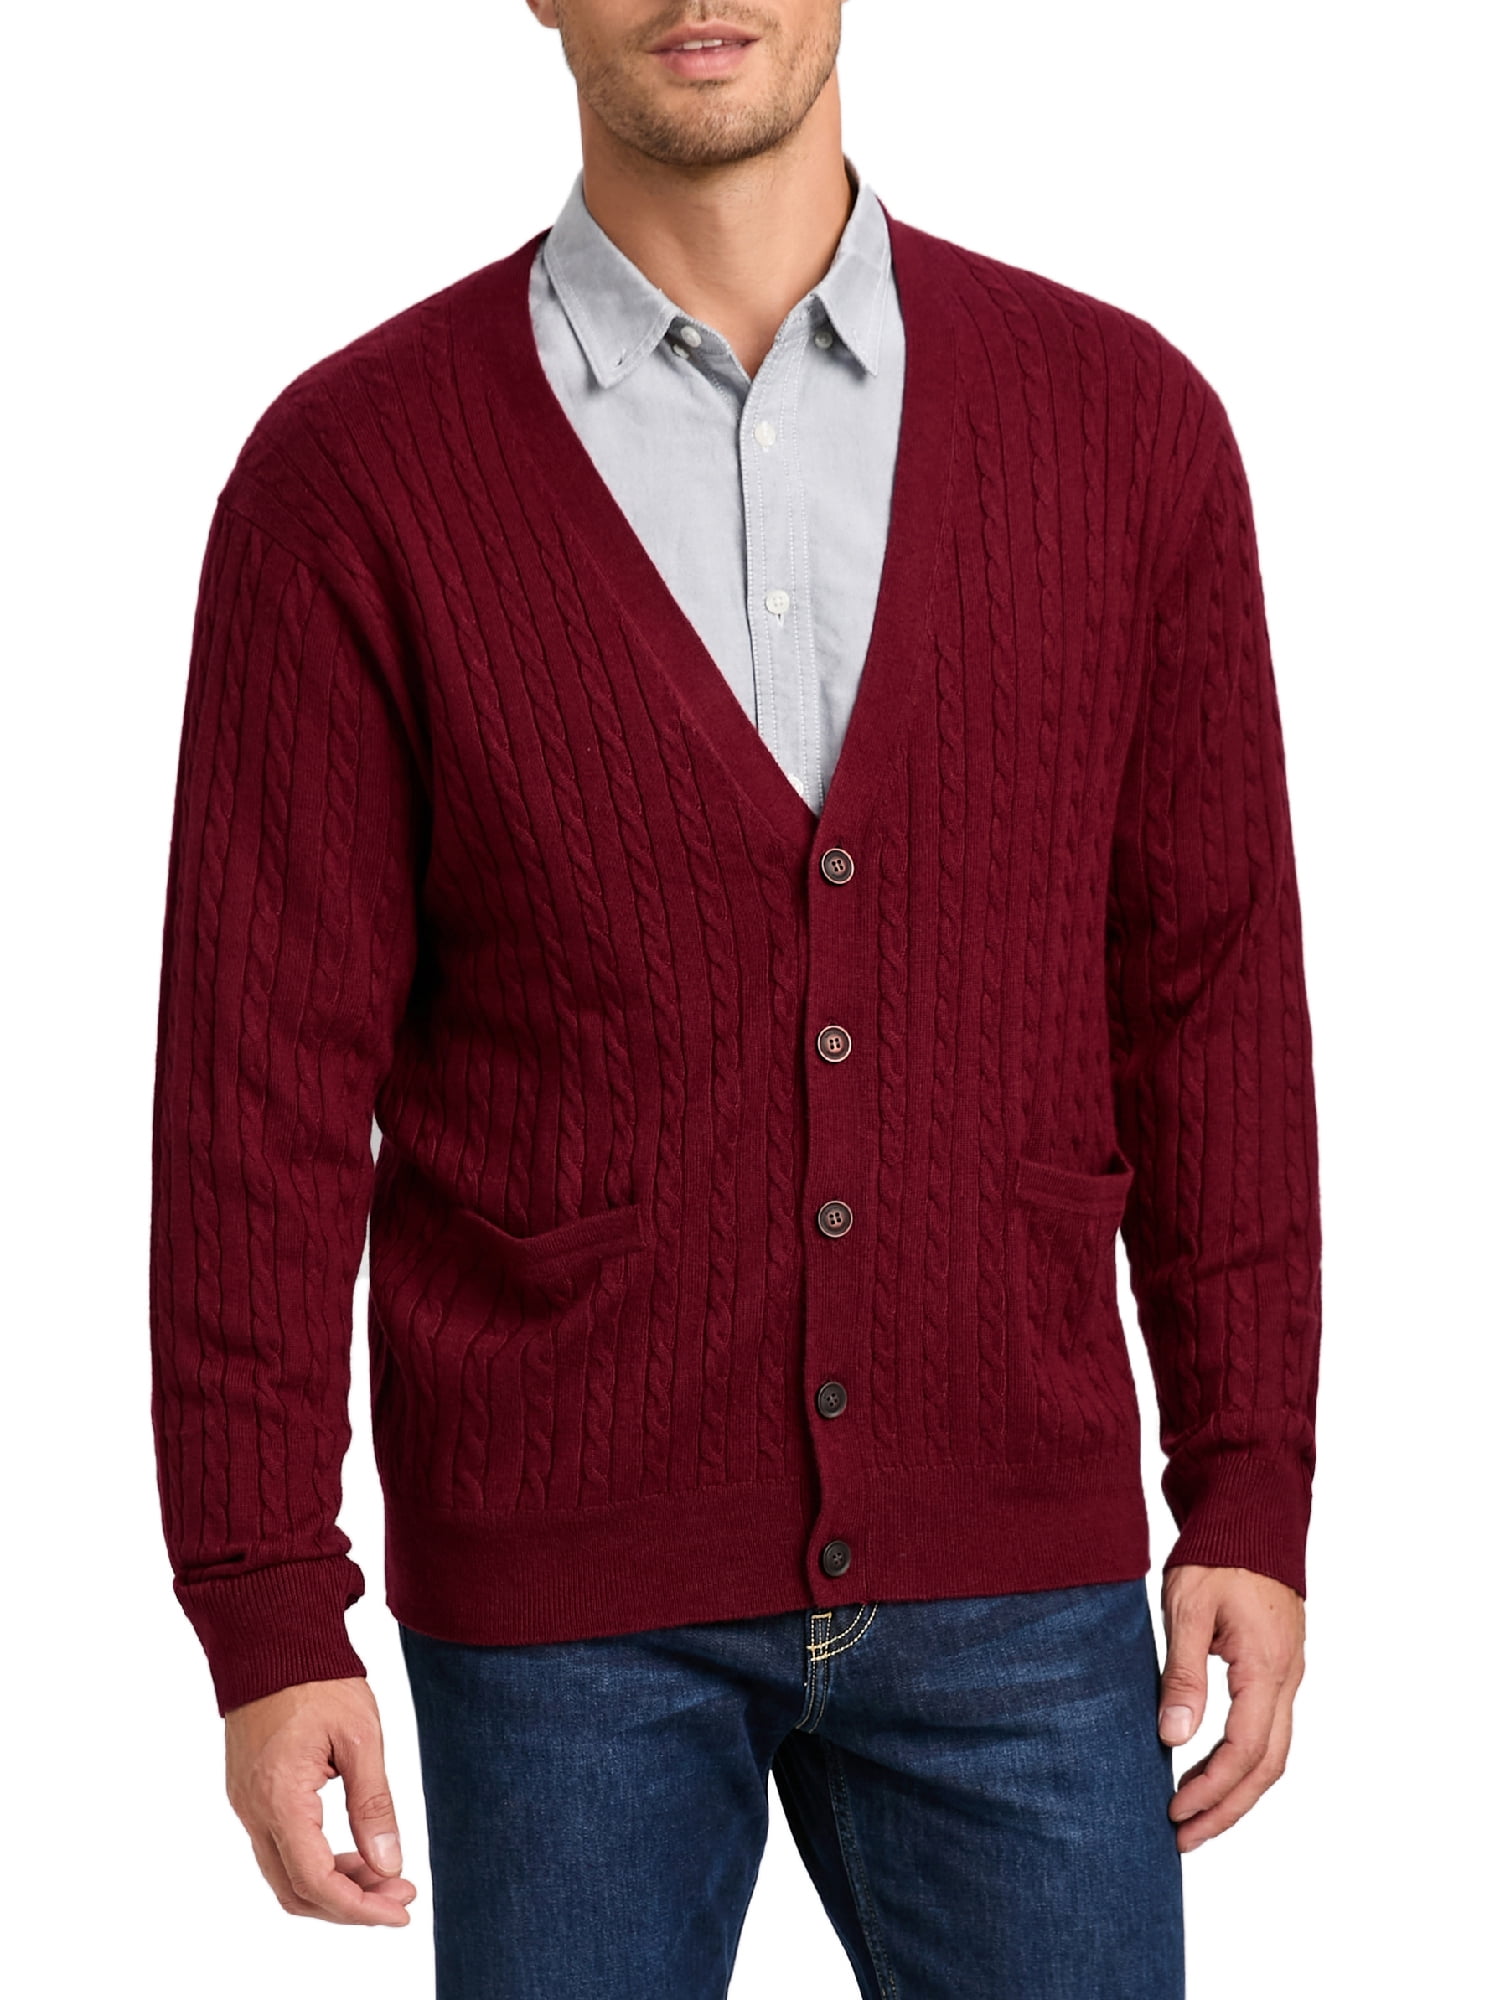 mot Lief Indrukwekkend Kallspin Men's Cashmere Wool Blend V-Neck Cable-Knit Cardigans Sweaters ( Burgundy, 2X-Large) - Walmart.com